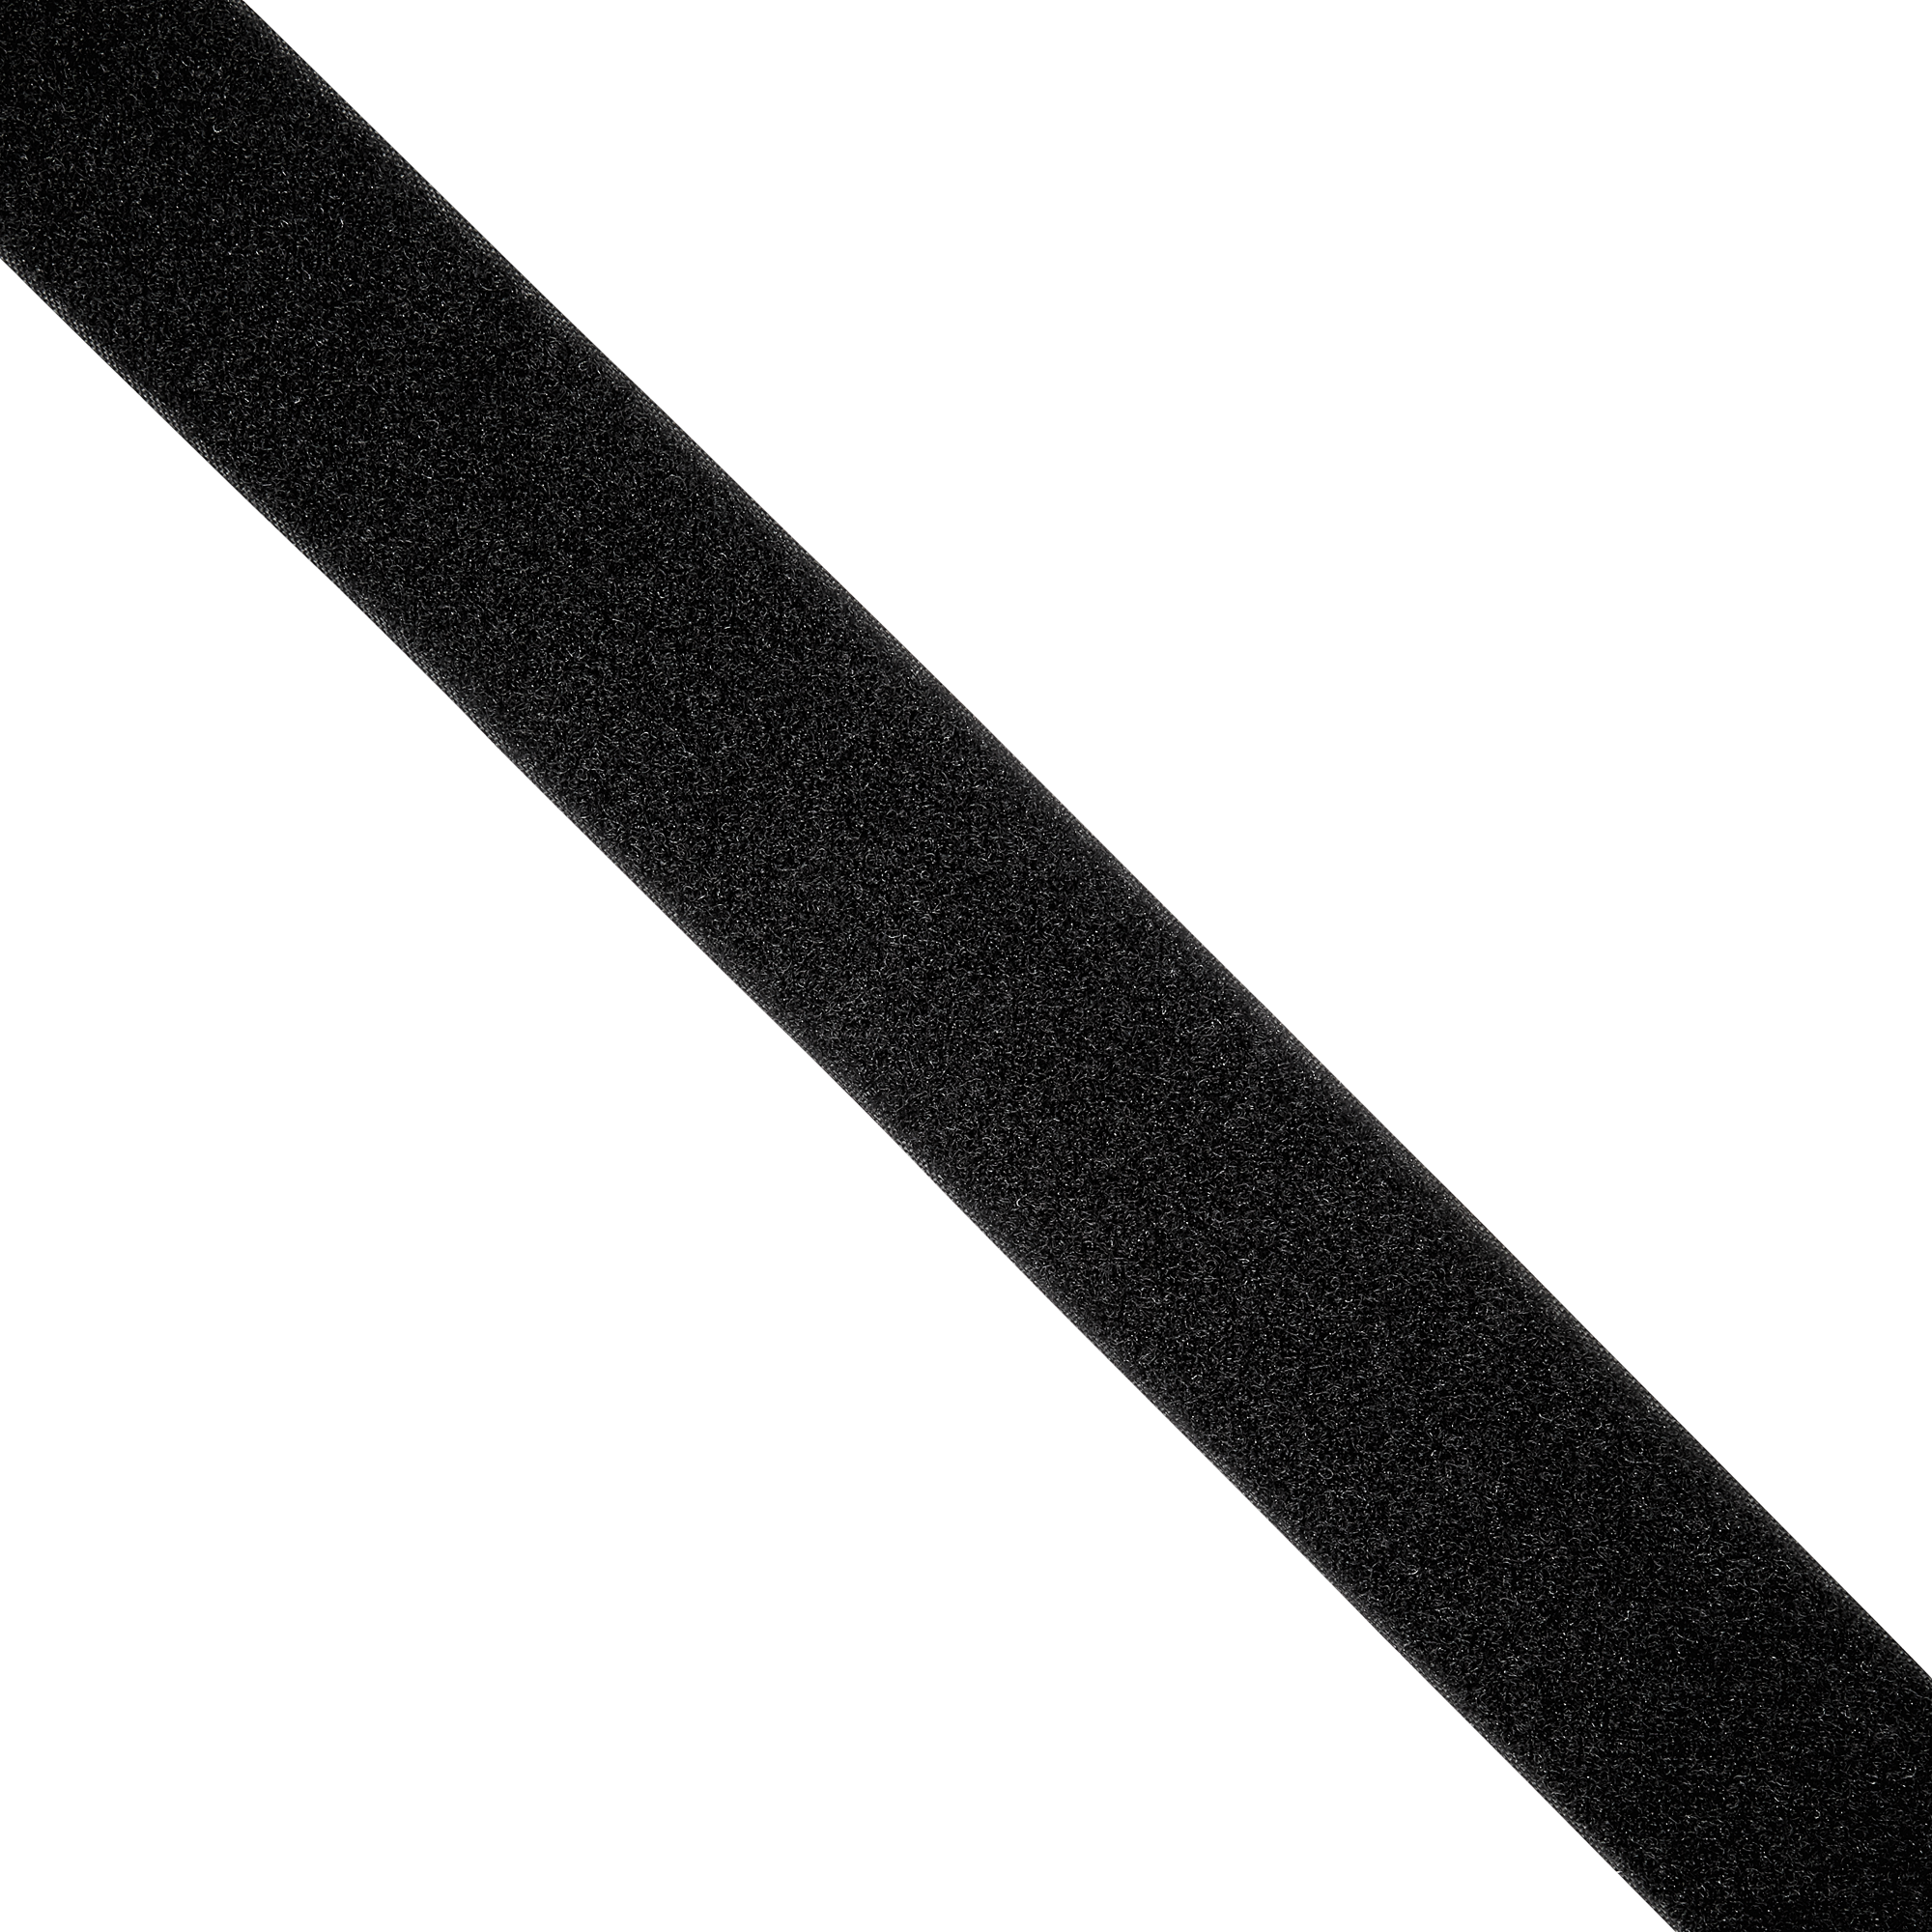 Flauschband selbstklebend schwarz Meterware 50 mm + product picture